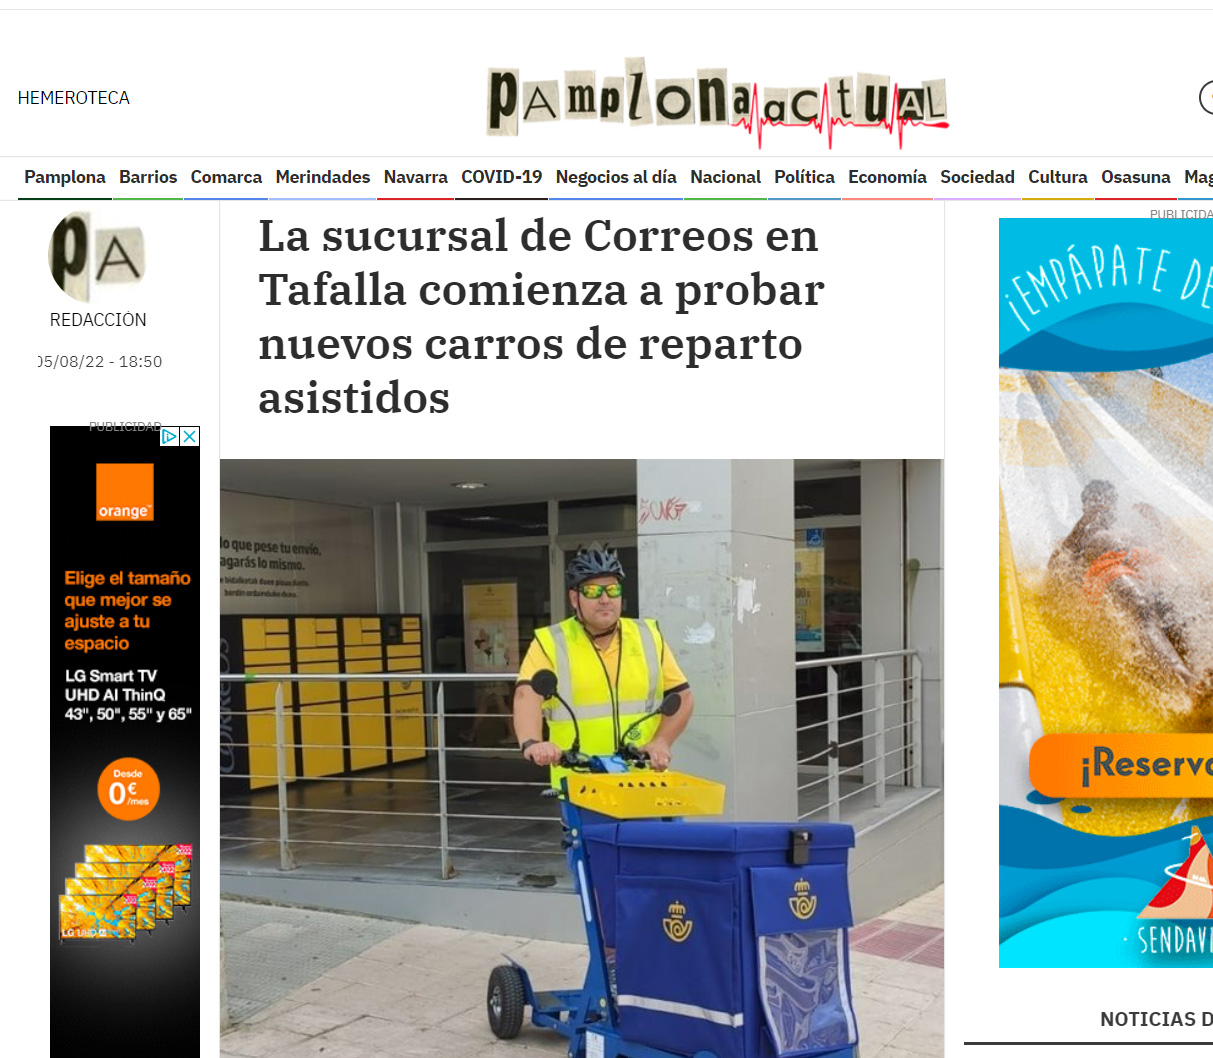 Nuevos carros de reparto asistidos de Correos en Tafalla. Pamplona Actual.